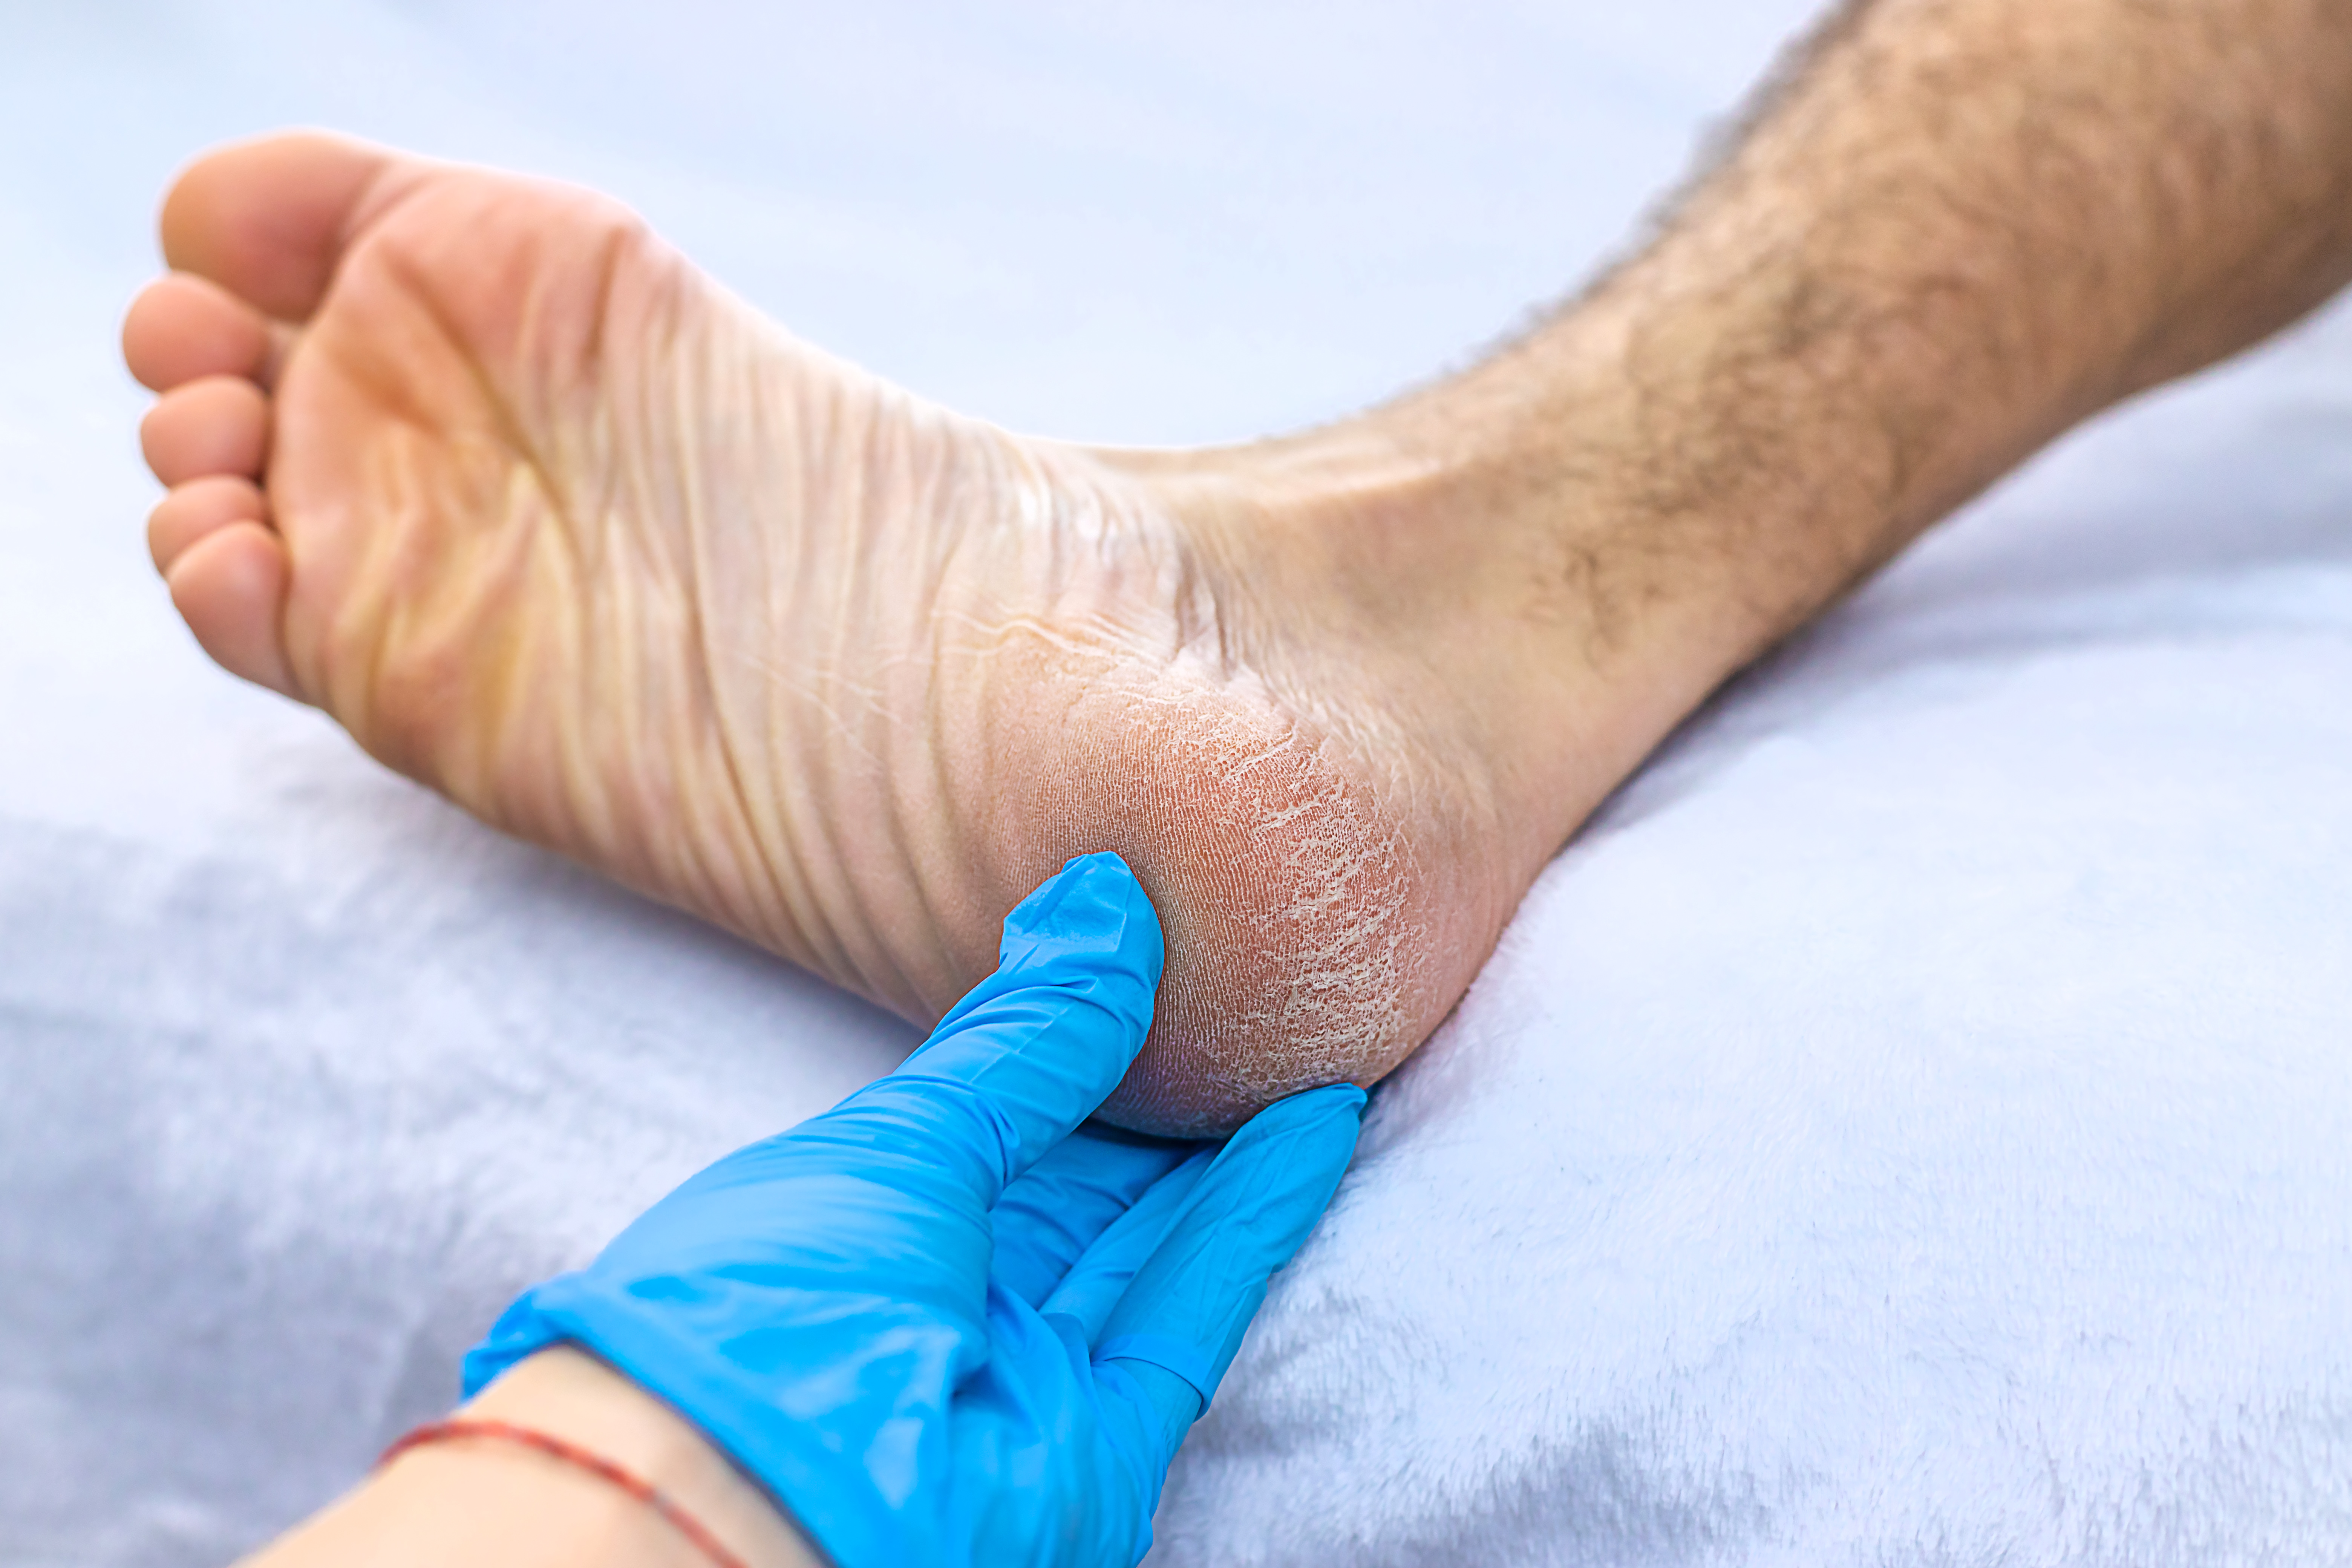 Fractures, Breaks, and Plantar Fasciitis | Heel That Pain